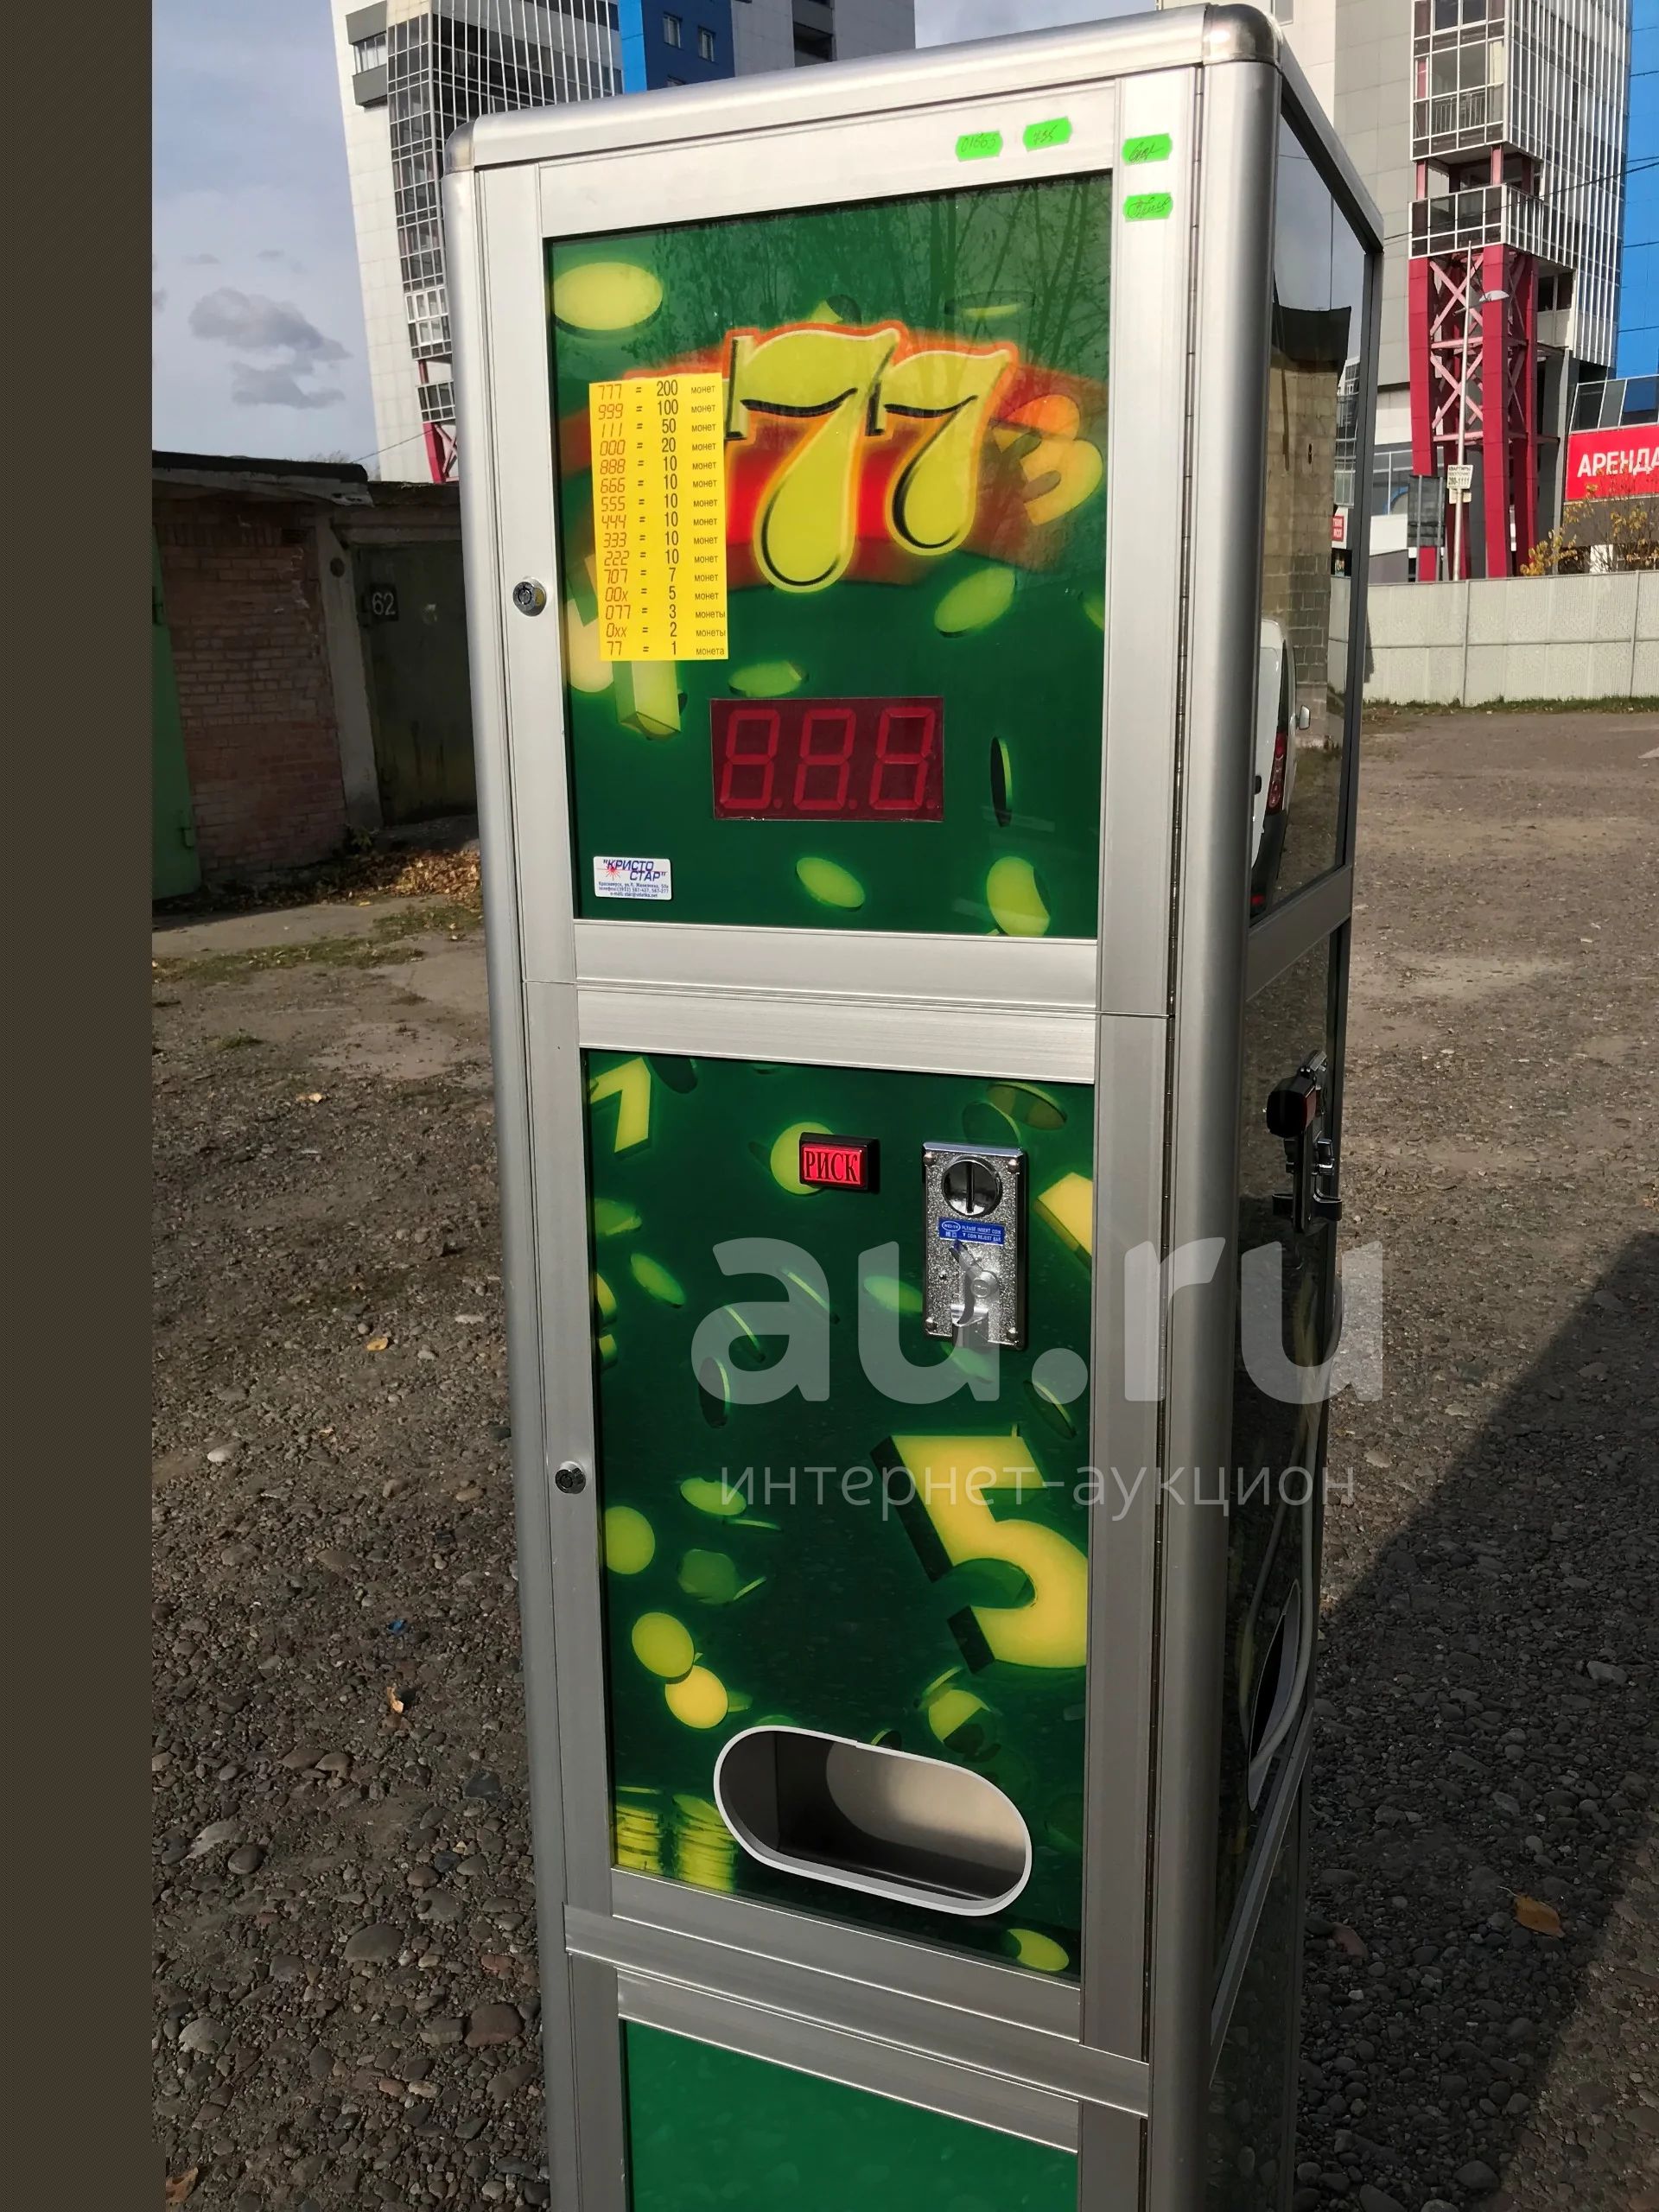 Игровые автоматы с выводом сбербанк vskazkah ru